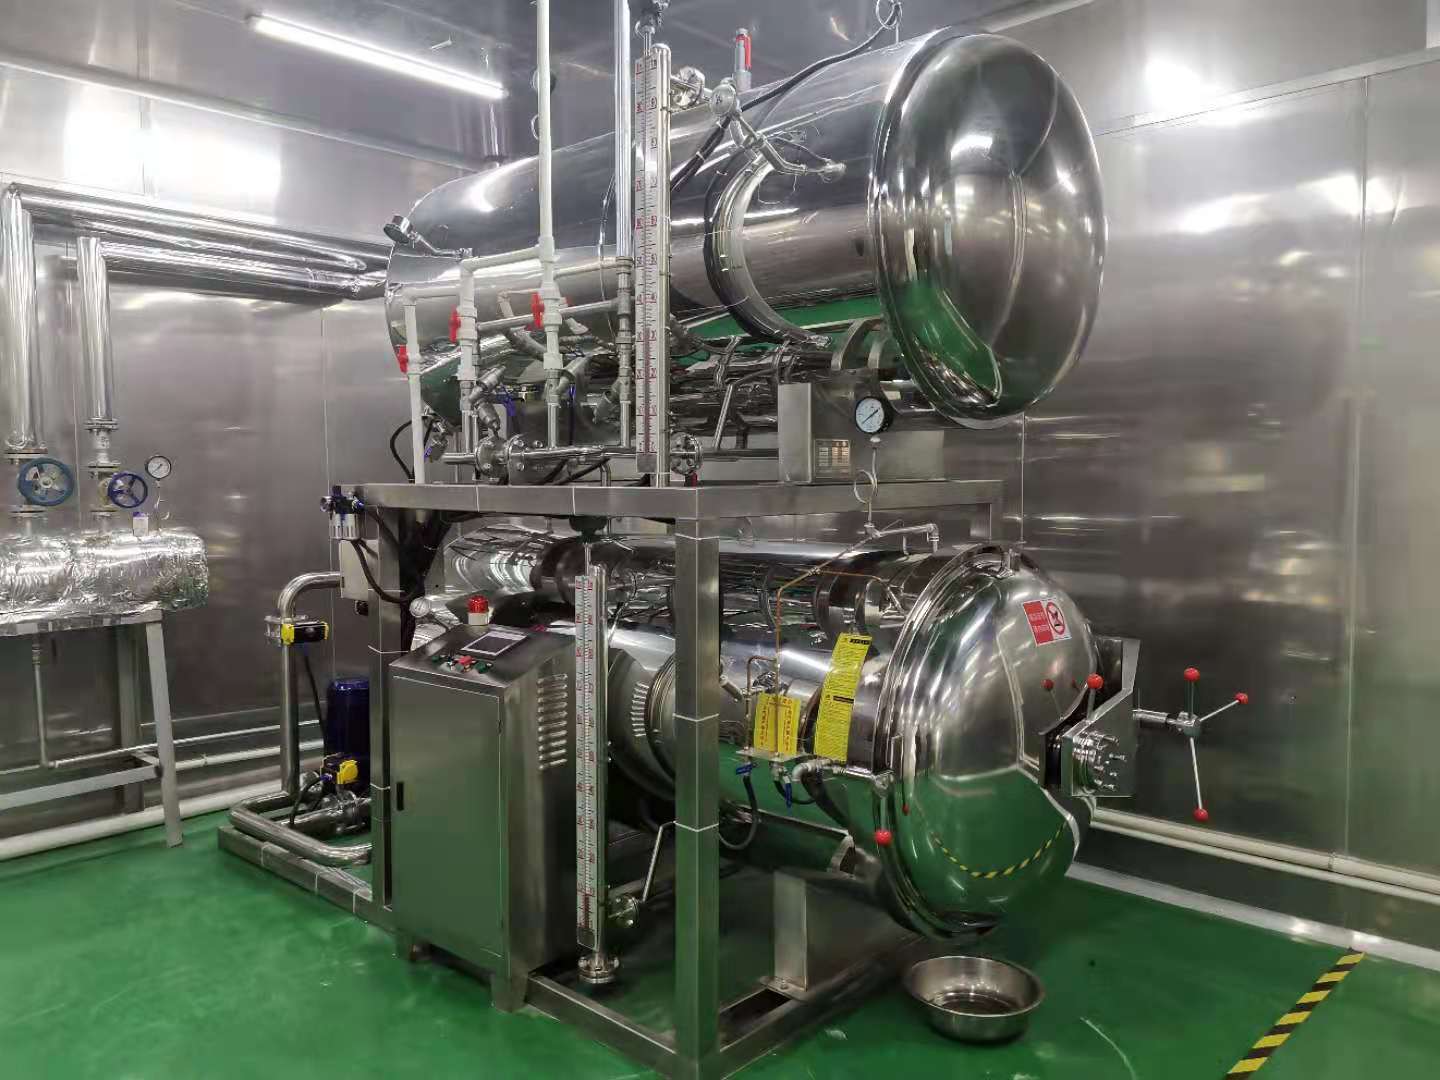 青岛即墨某肉食品厂太阳能热水工程辅助天然气锅炉工业用生产热水